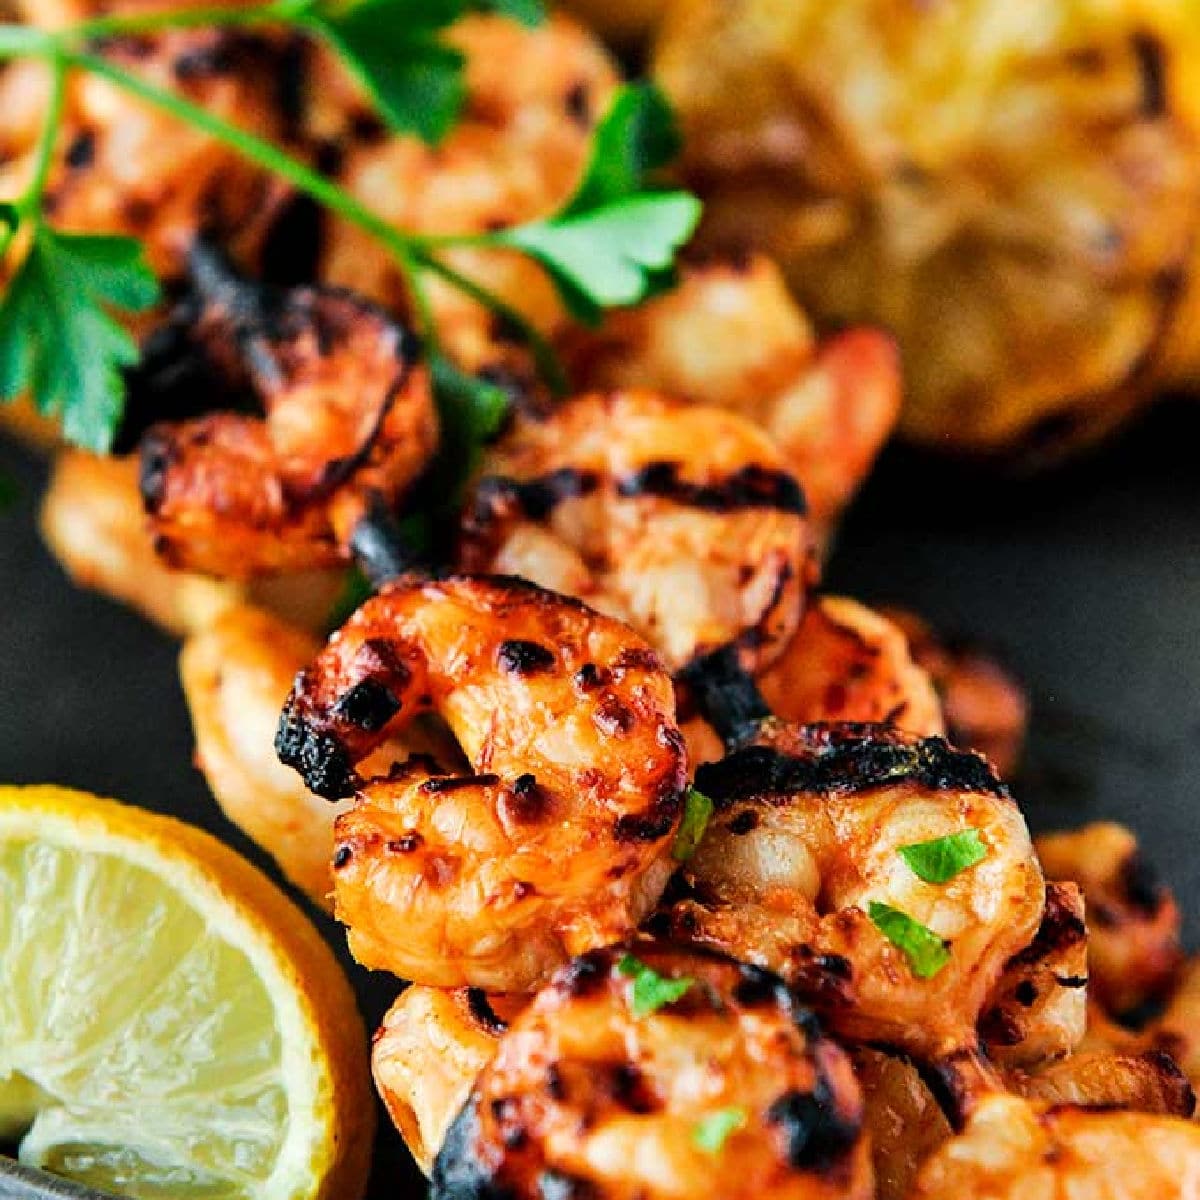 Tasty looking grilled shrimp on a skewer.